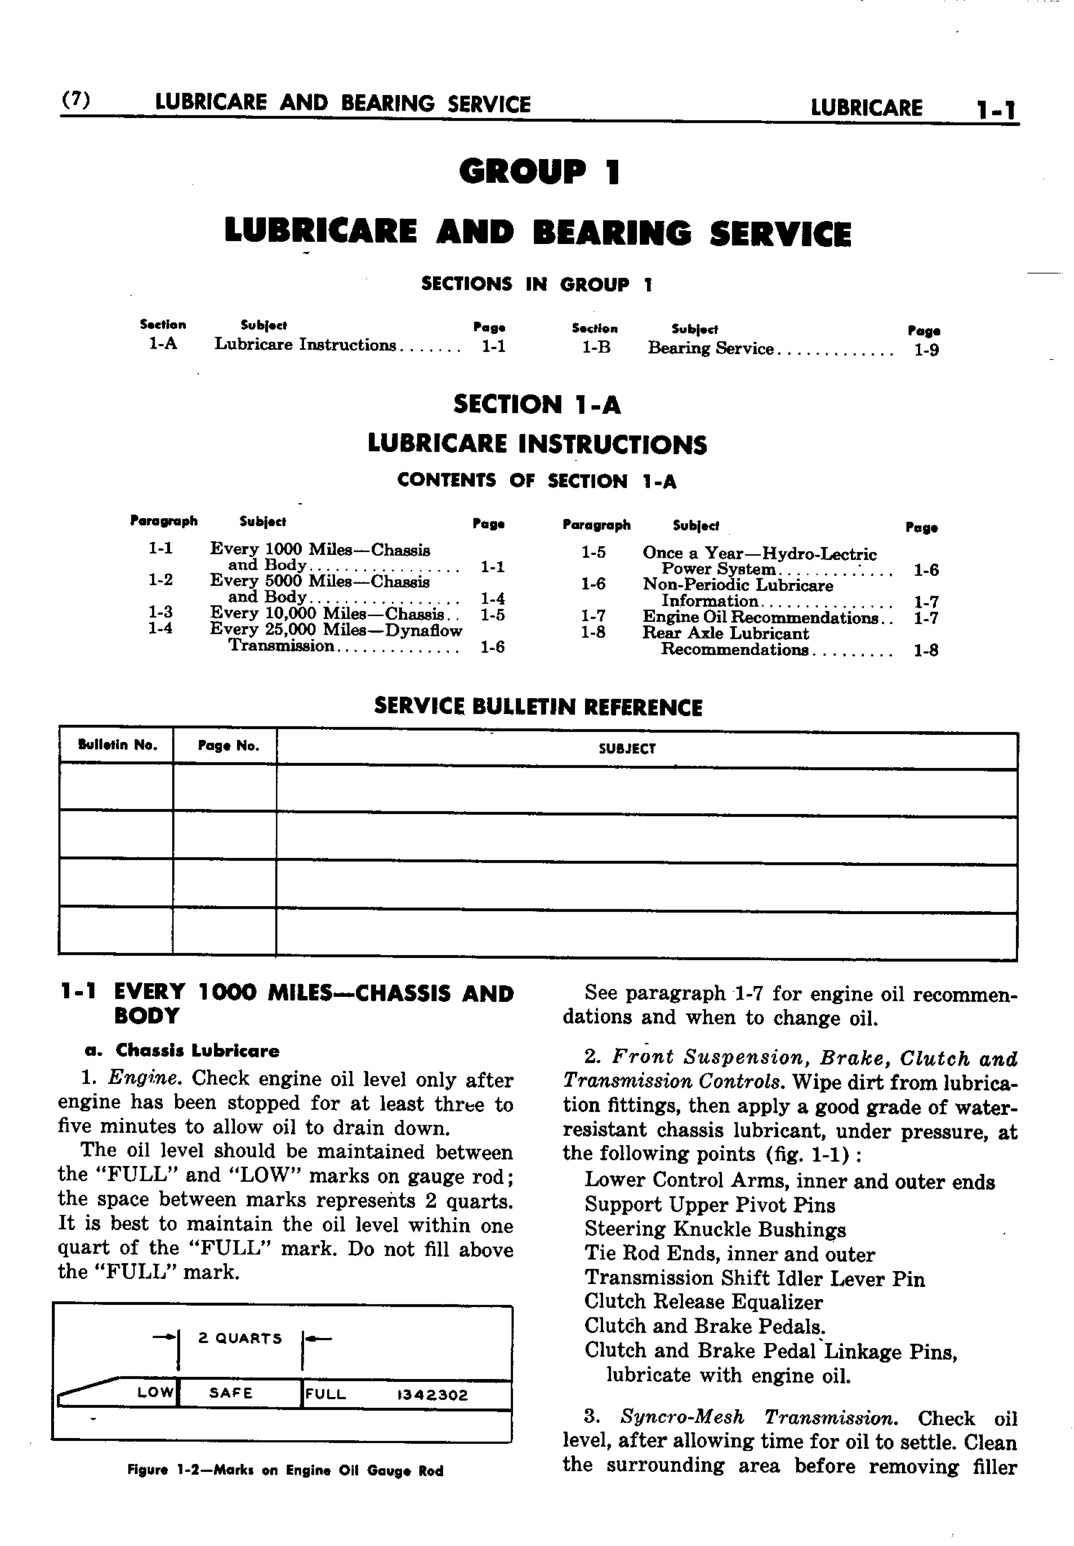 n_02 1952 Buick Shop Manual - Lubricare-001-001.jpg